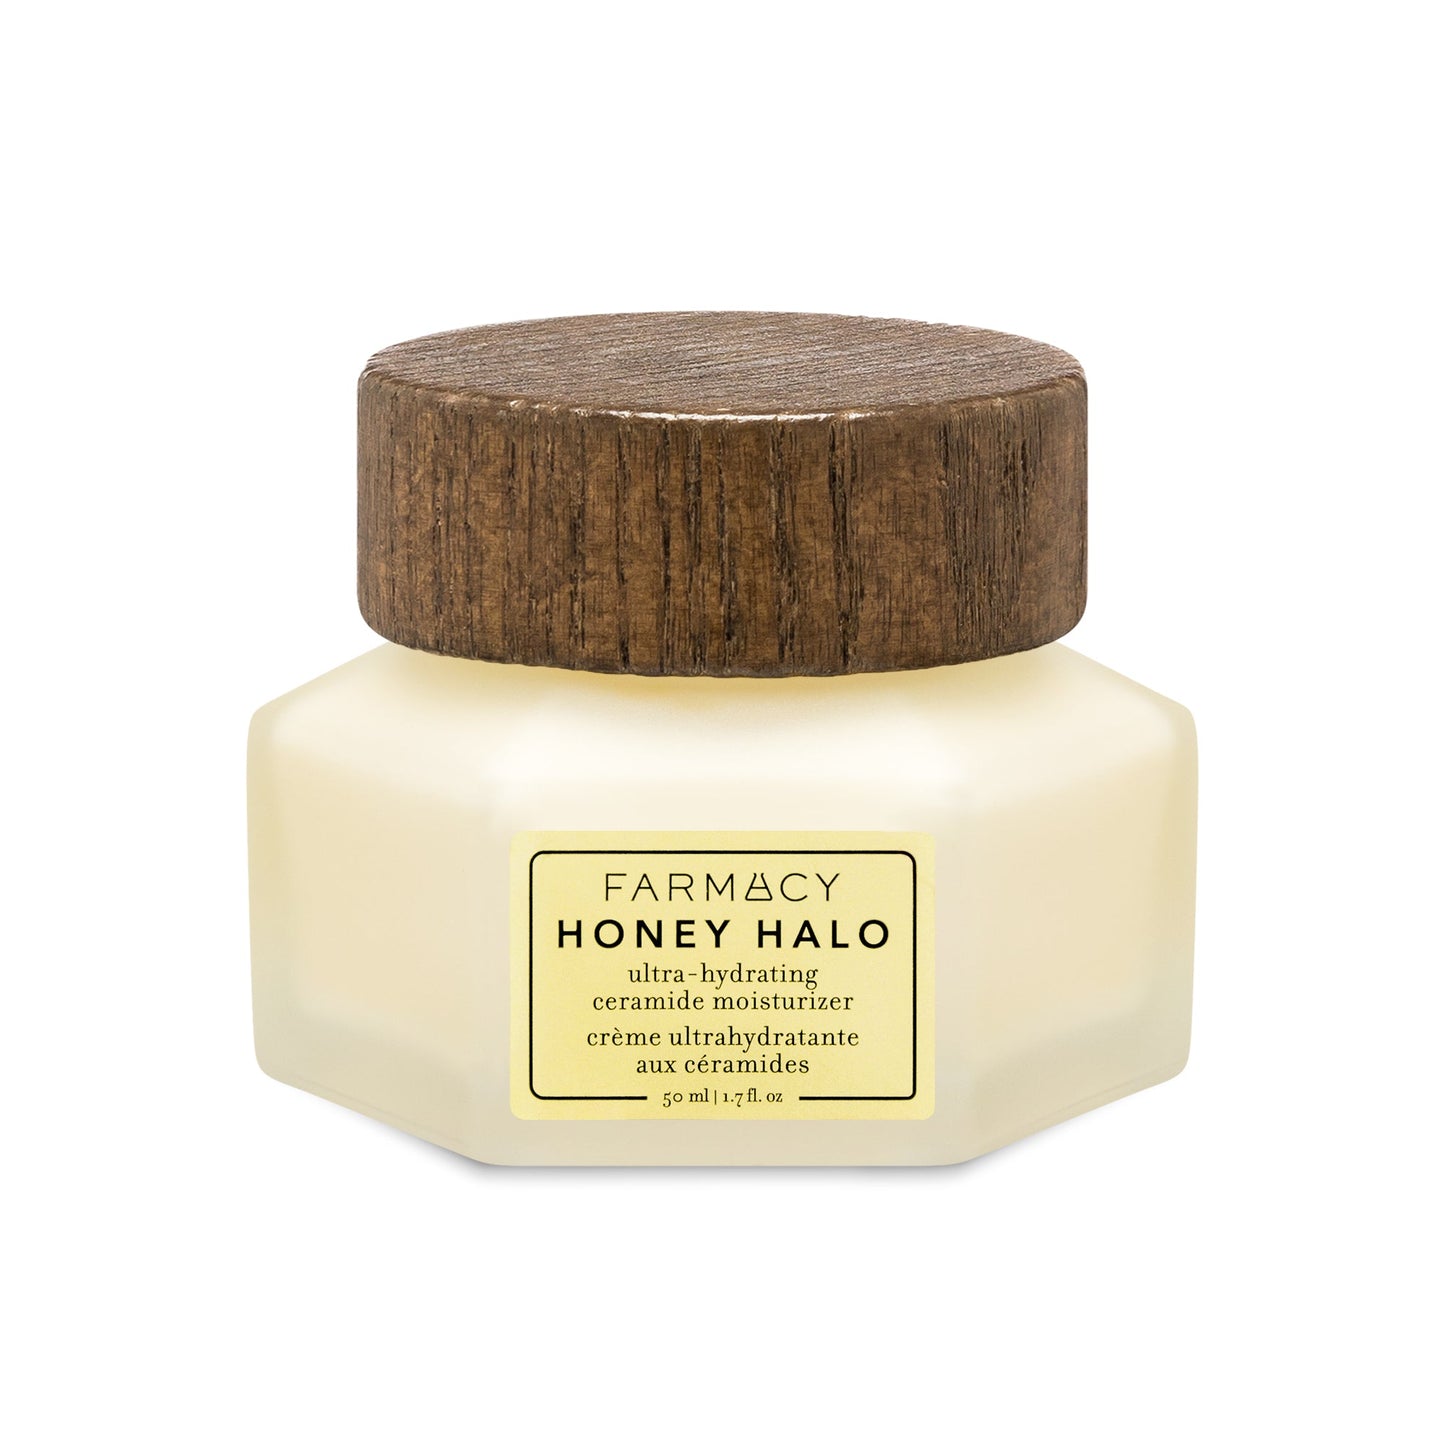 Honey Halo ultra-hydrating - Farmacy